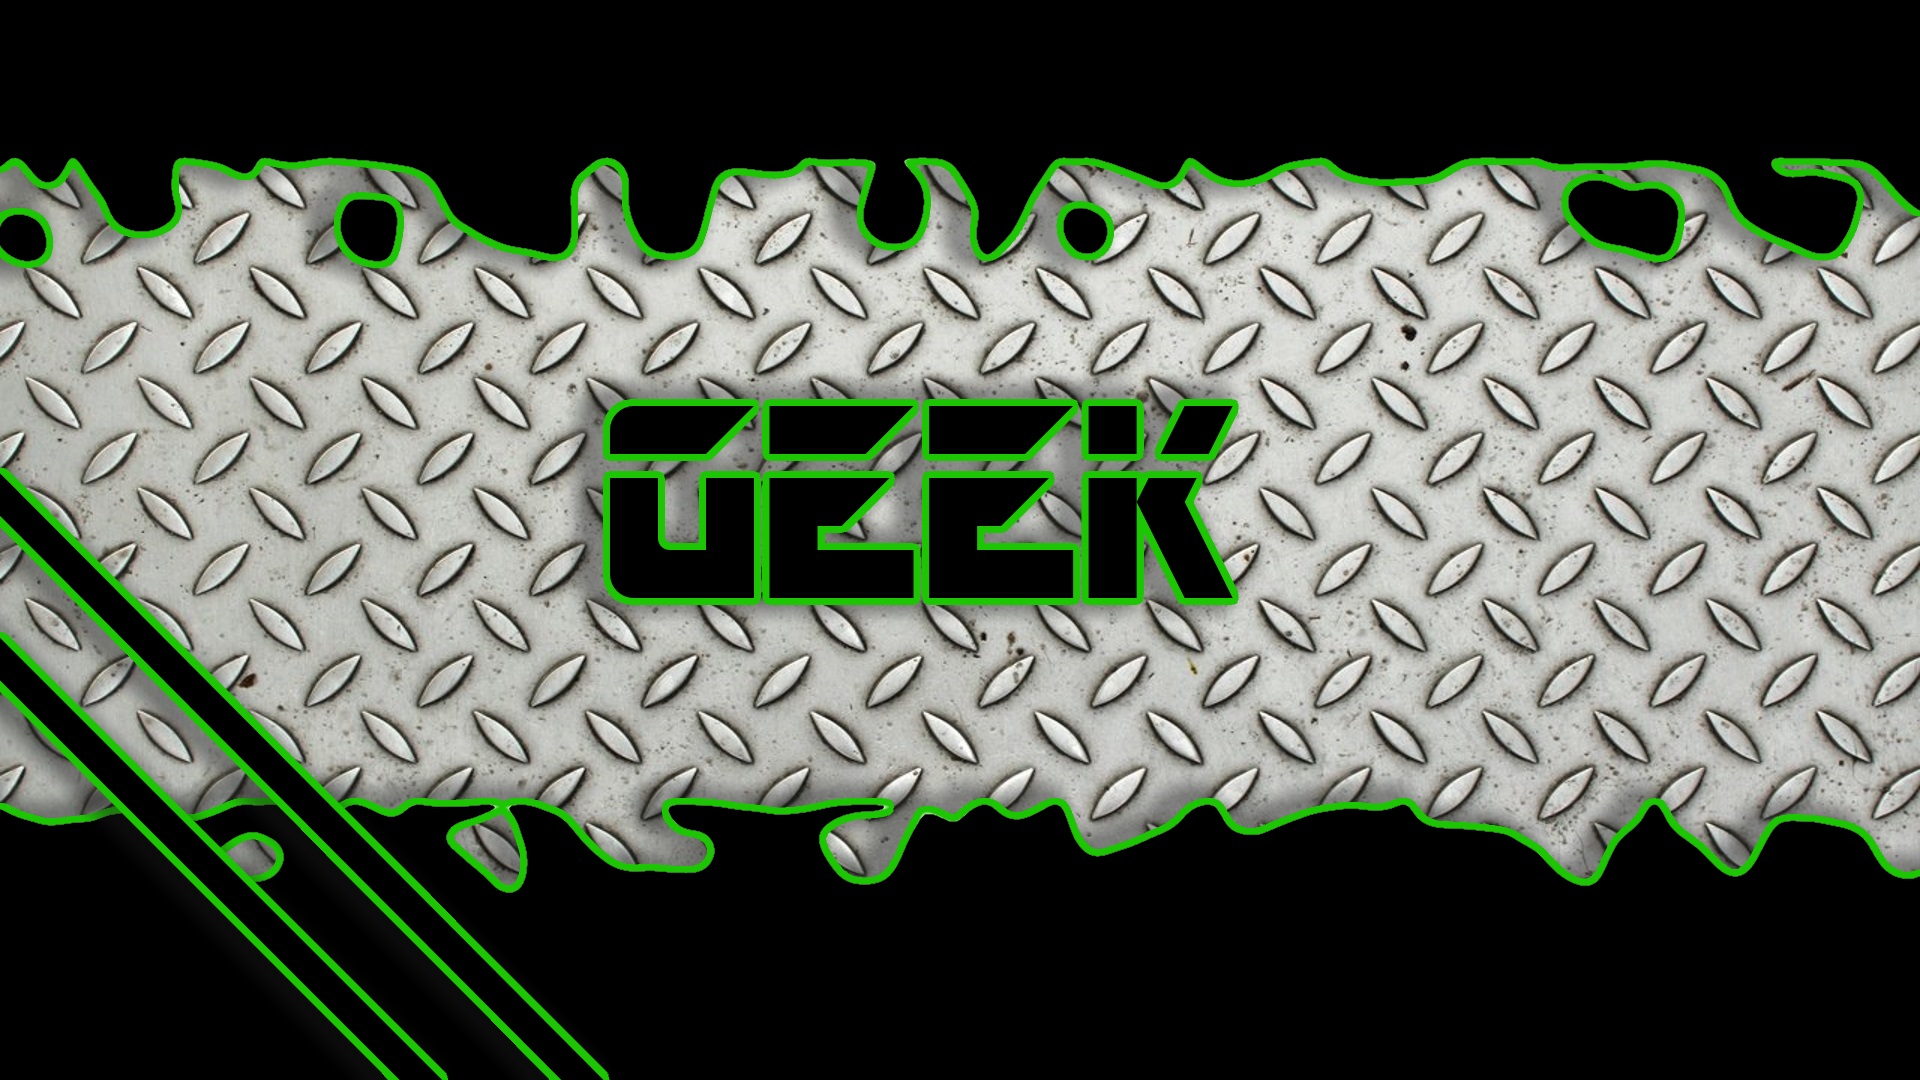 geek green p deke nerd black steel tech hd wallpaper 